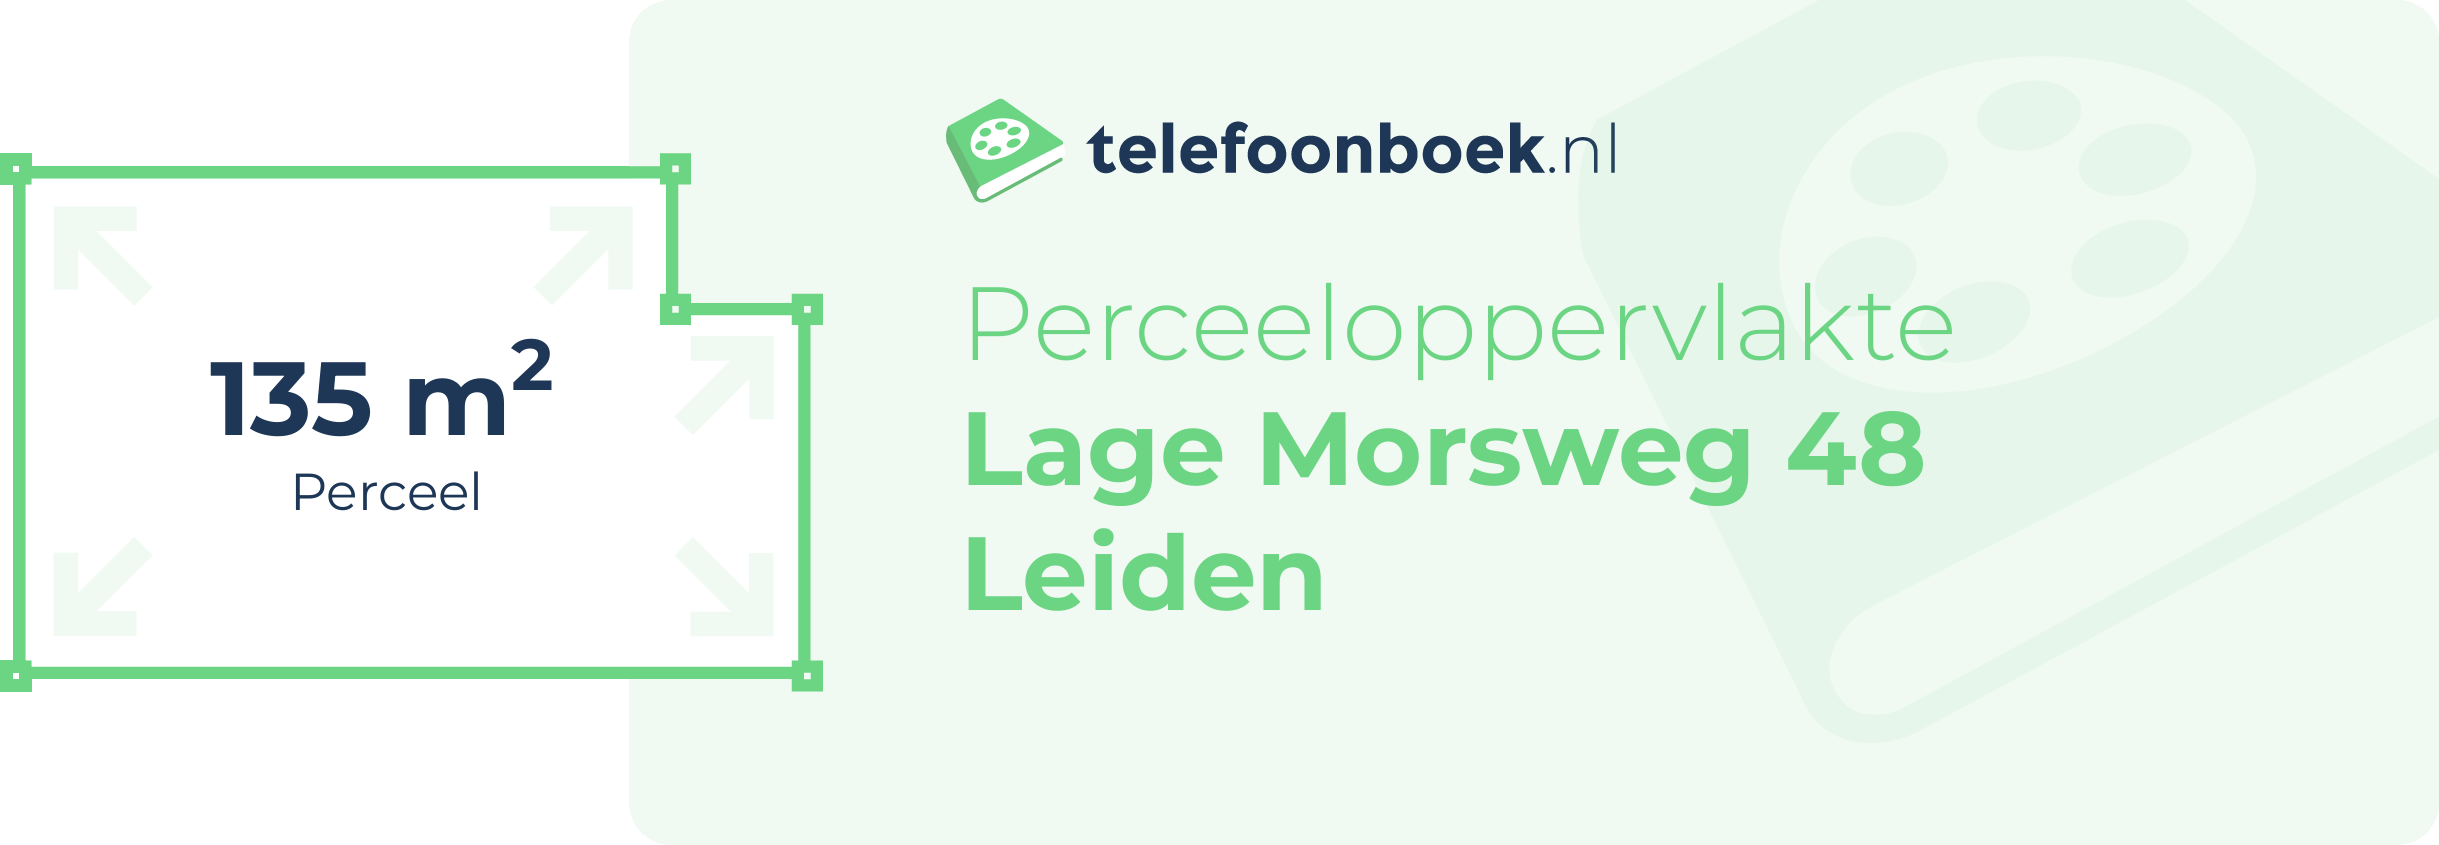 Perceeloppervlakte Lage Morsweg 48 Leiden